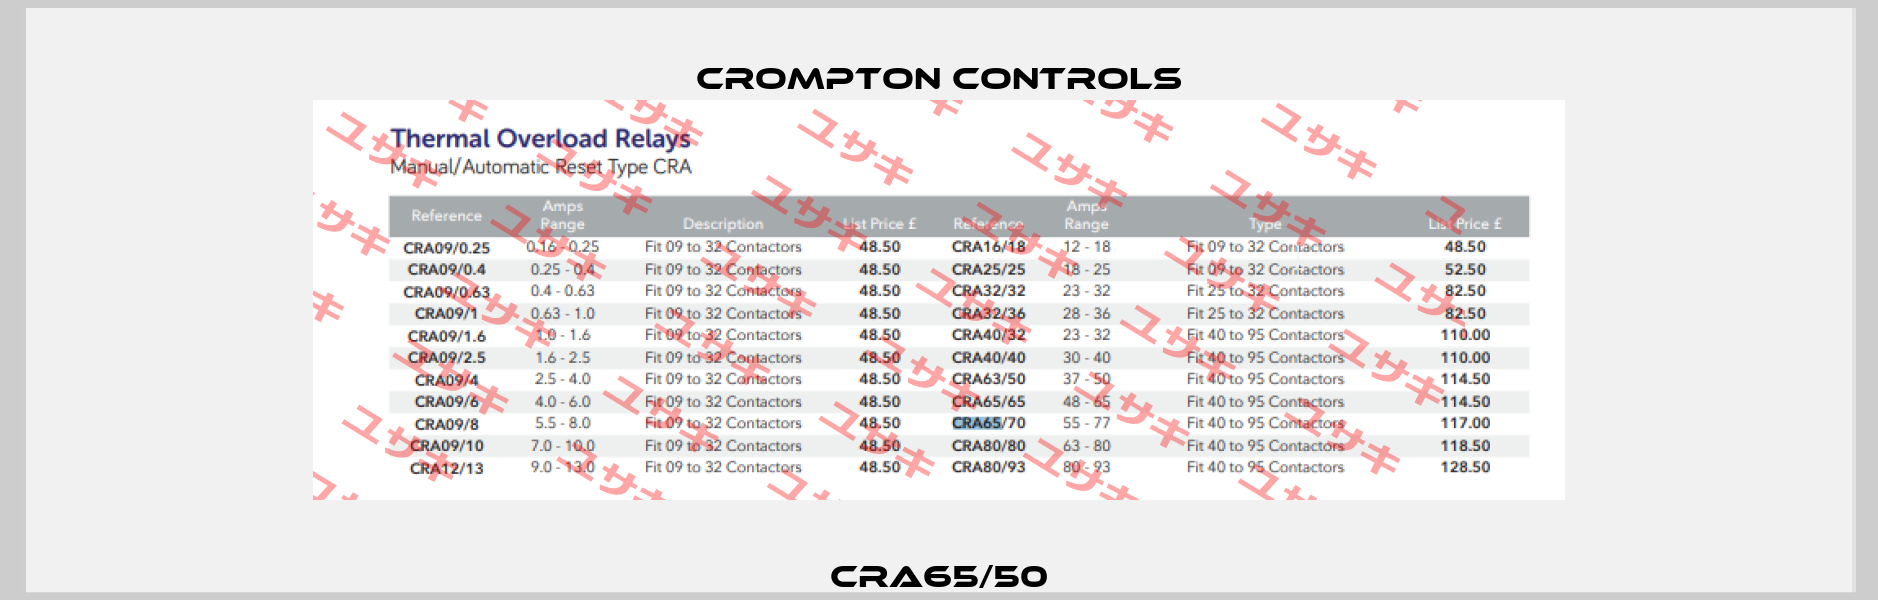 CRA65/50 Crompton Controls